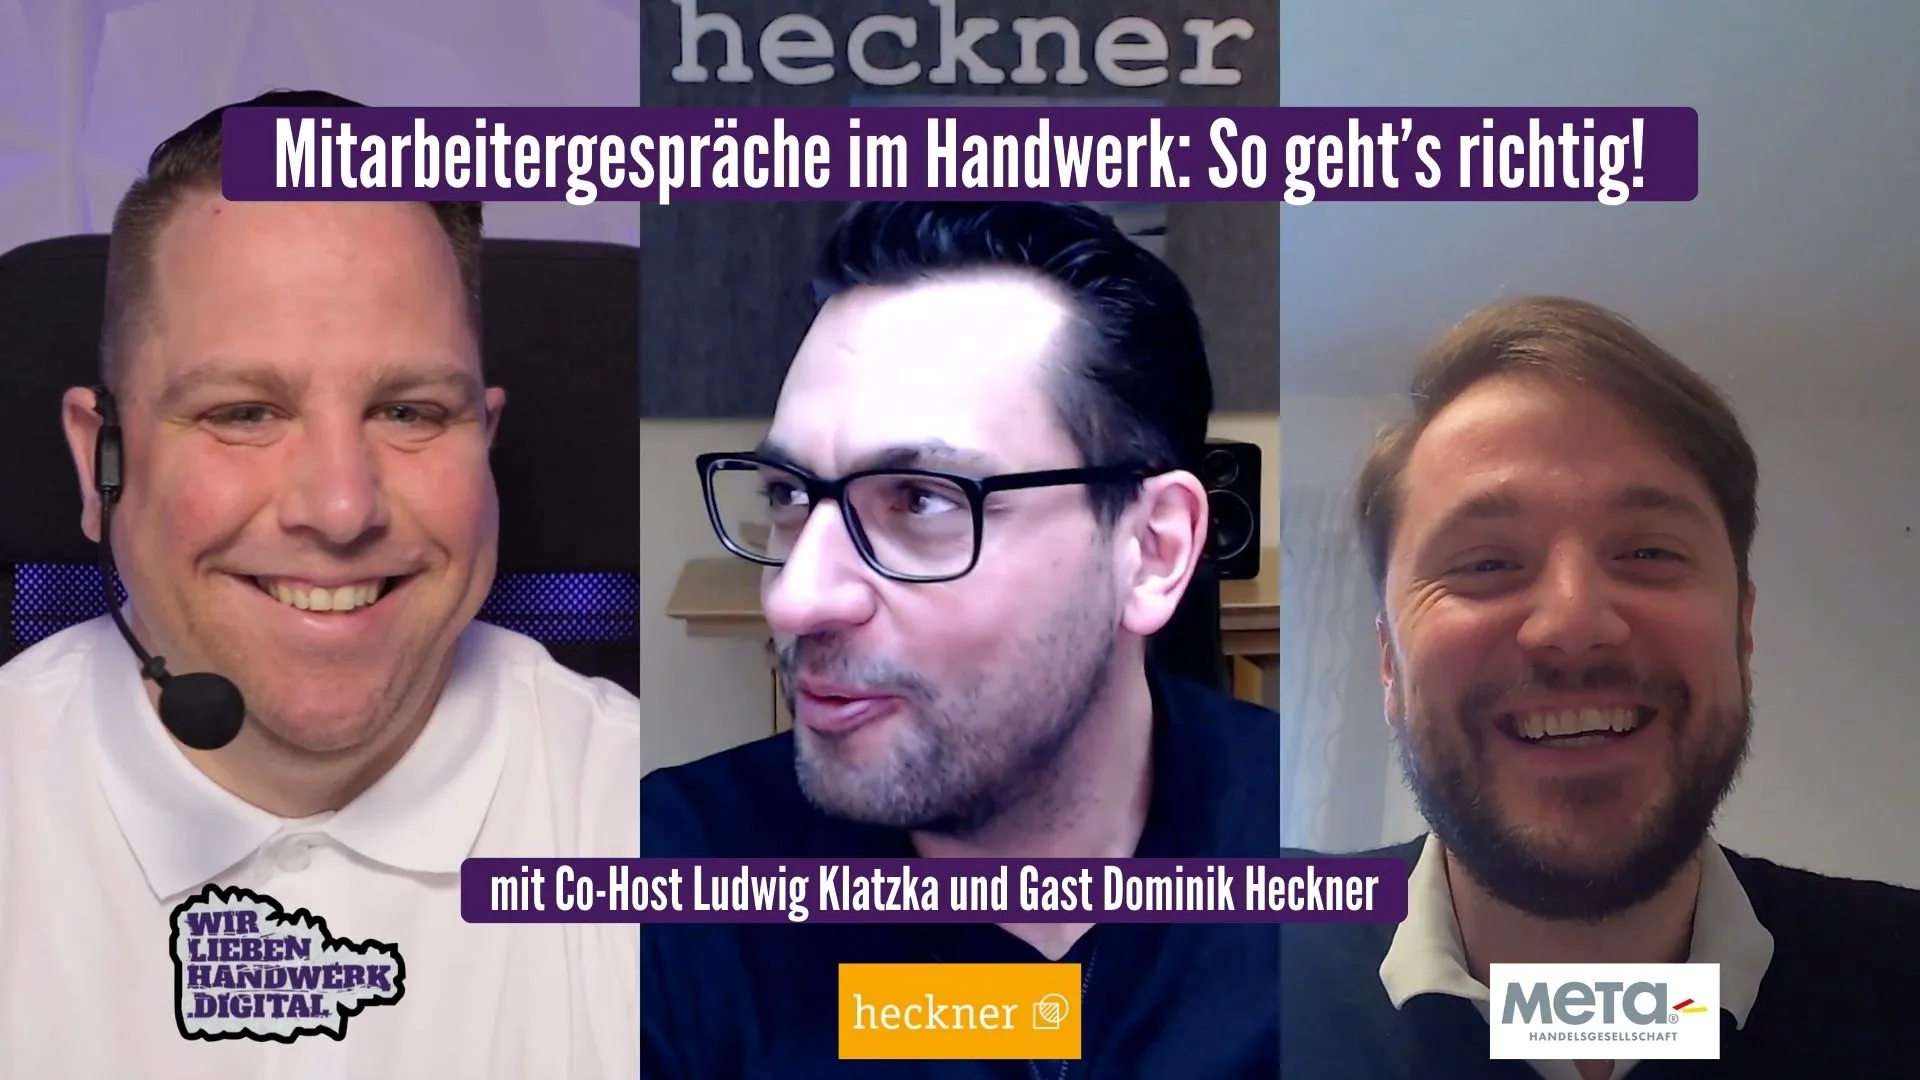 "Mitarbeitergespräch im Handwerk: So geht´s richtig"" - Podcast Episode mit Dominik Heckner und Co-Host Ludwig Klatzka im WirliebenHandwerk.digital Podcast